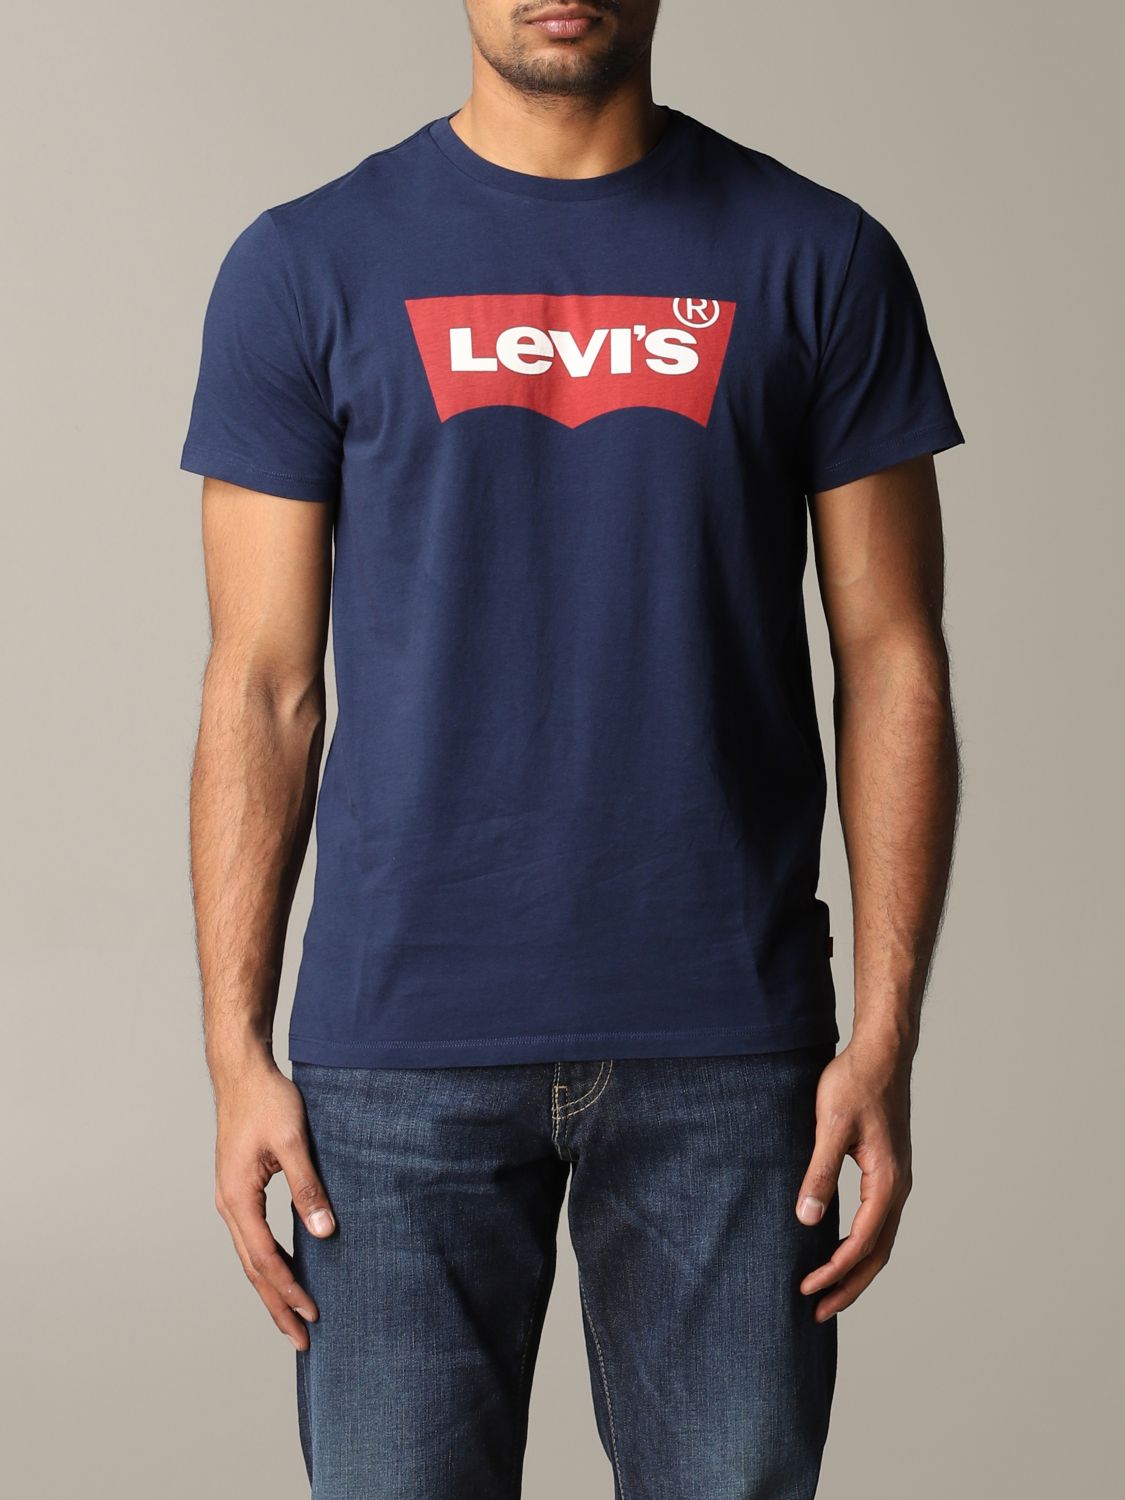 blue levis t shirt